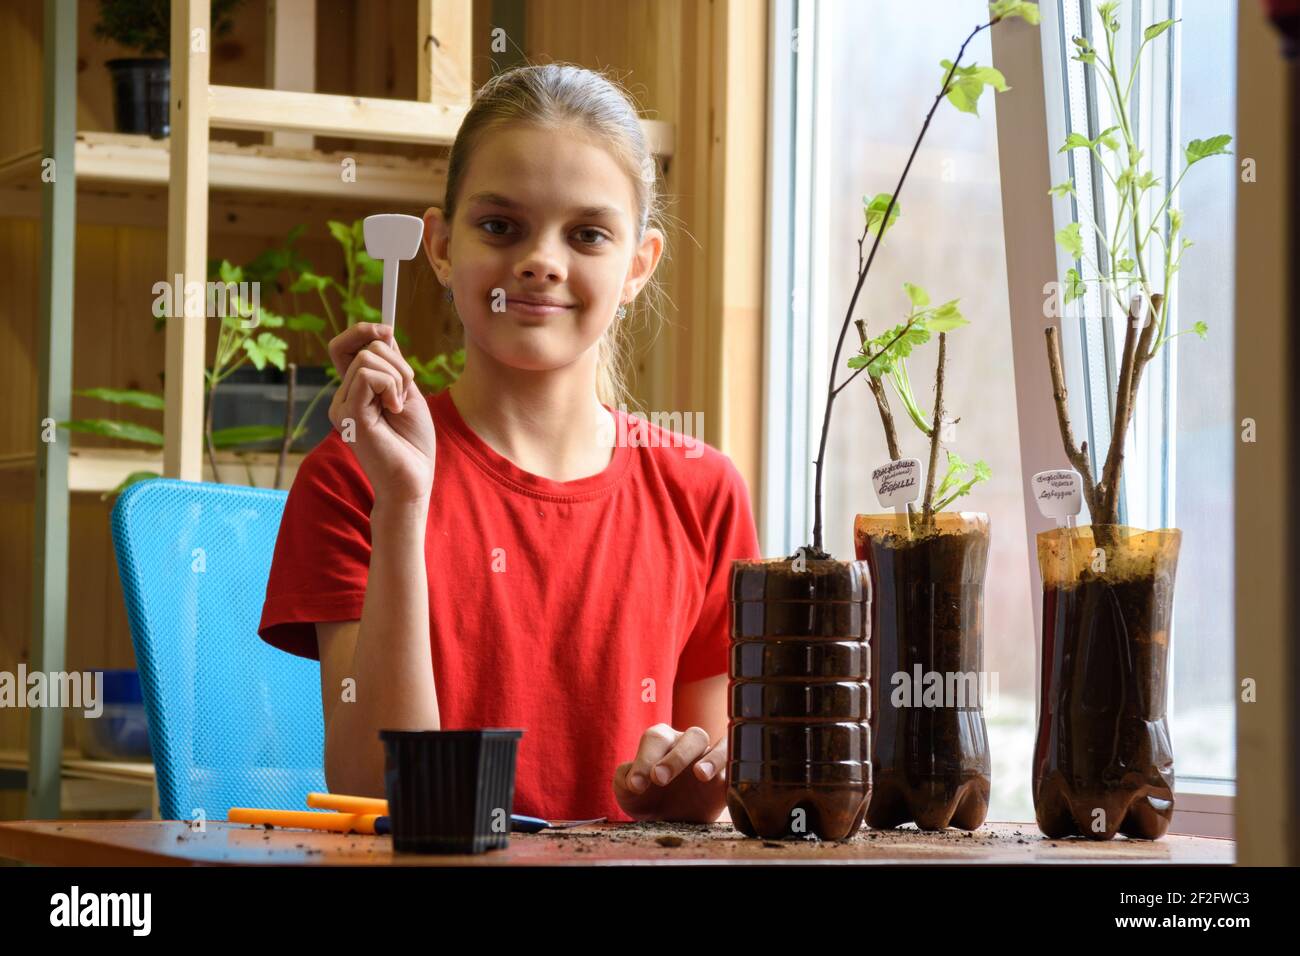 Una niña está dedicada a plantar plántulas de arbustos de bayas en macetas de botellas de plástico, sostiene un puntero con el nombre de la planta en sus manos y el haphil Foto de stock